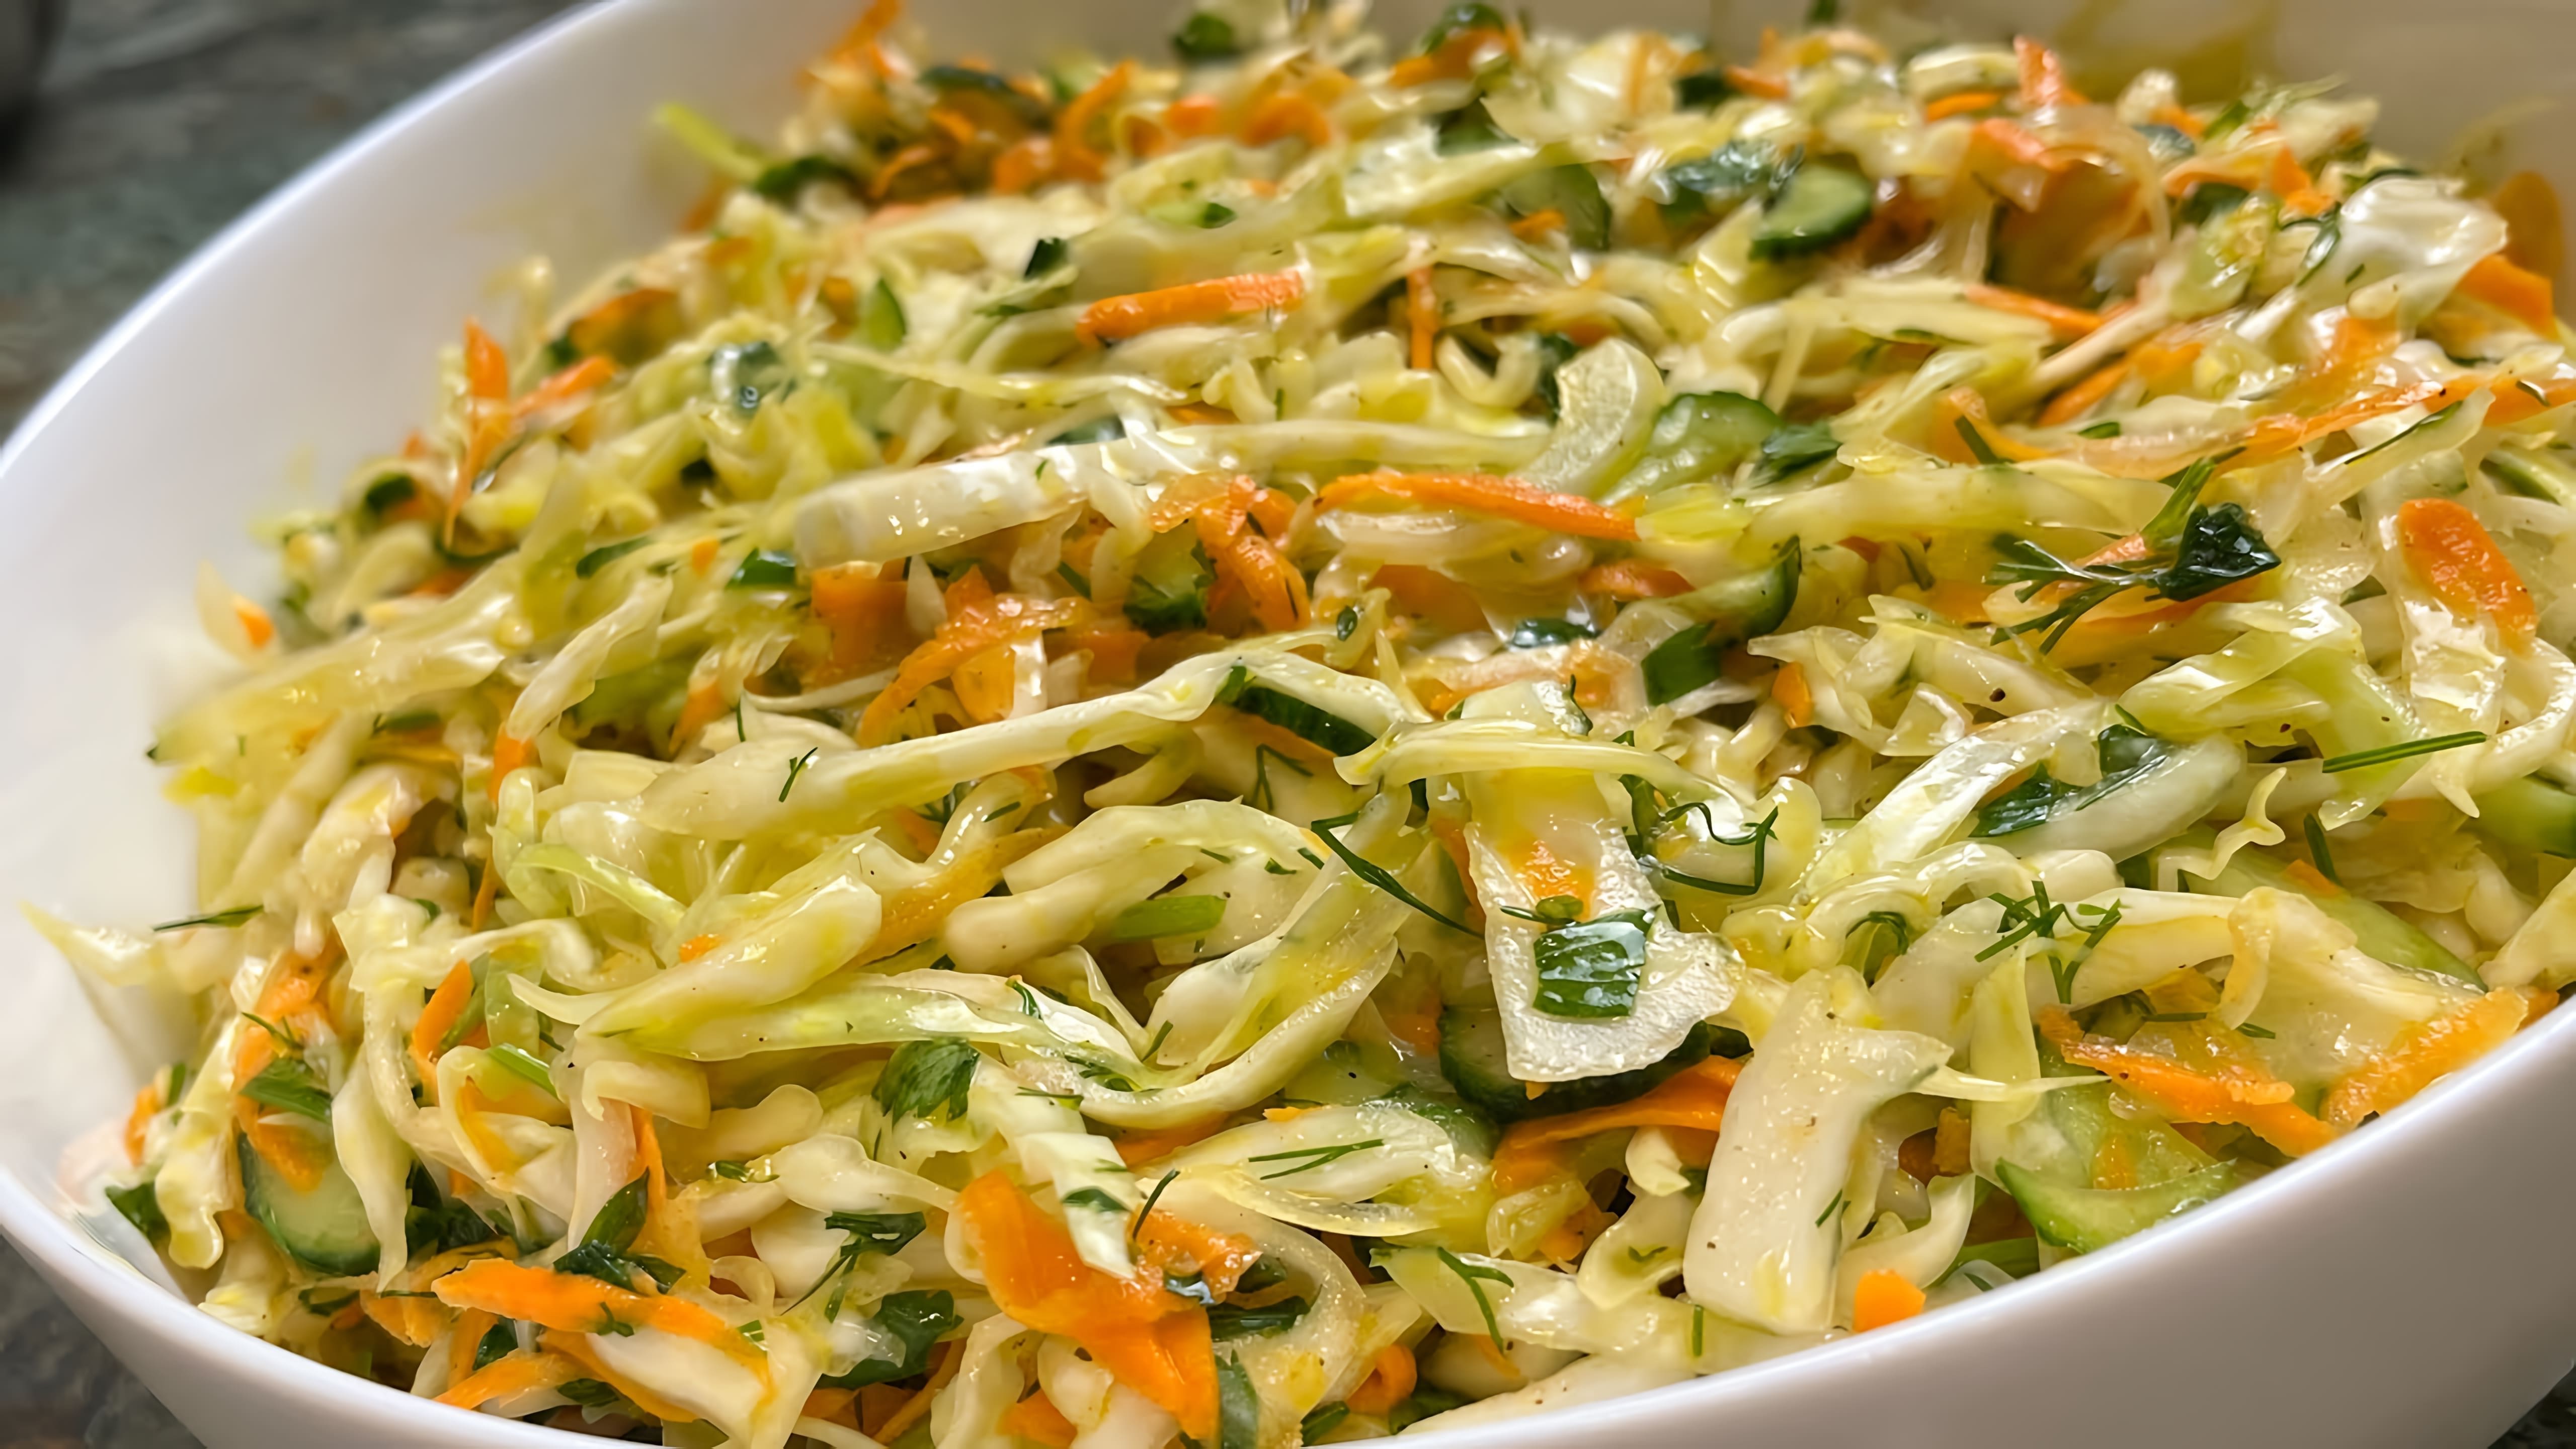 В этом видео демонстрируется рецепт простого и быстрого салата из капусты, который можно приготовить на каждый день